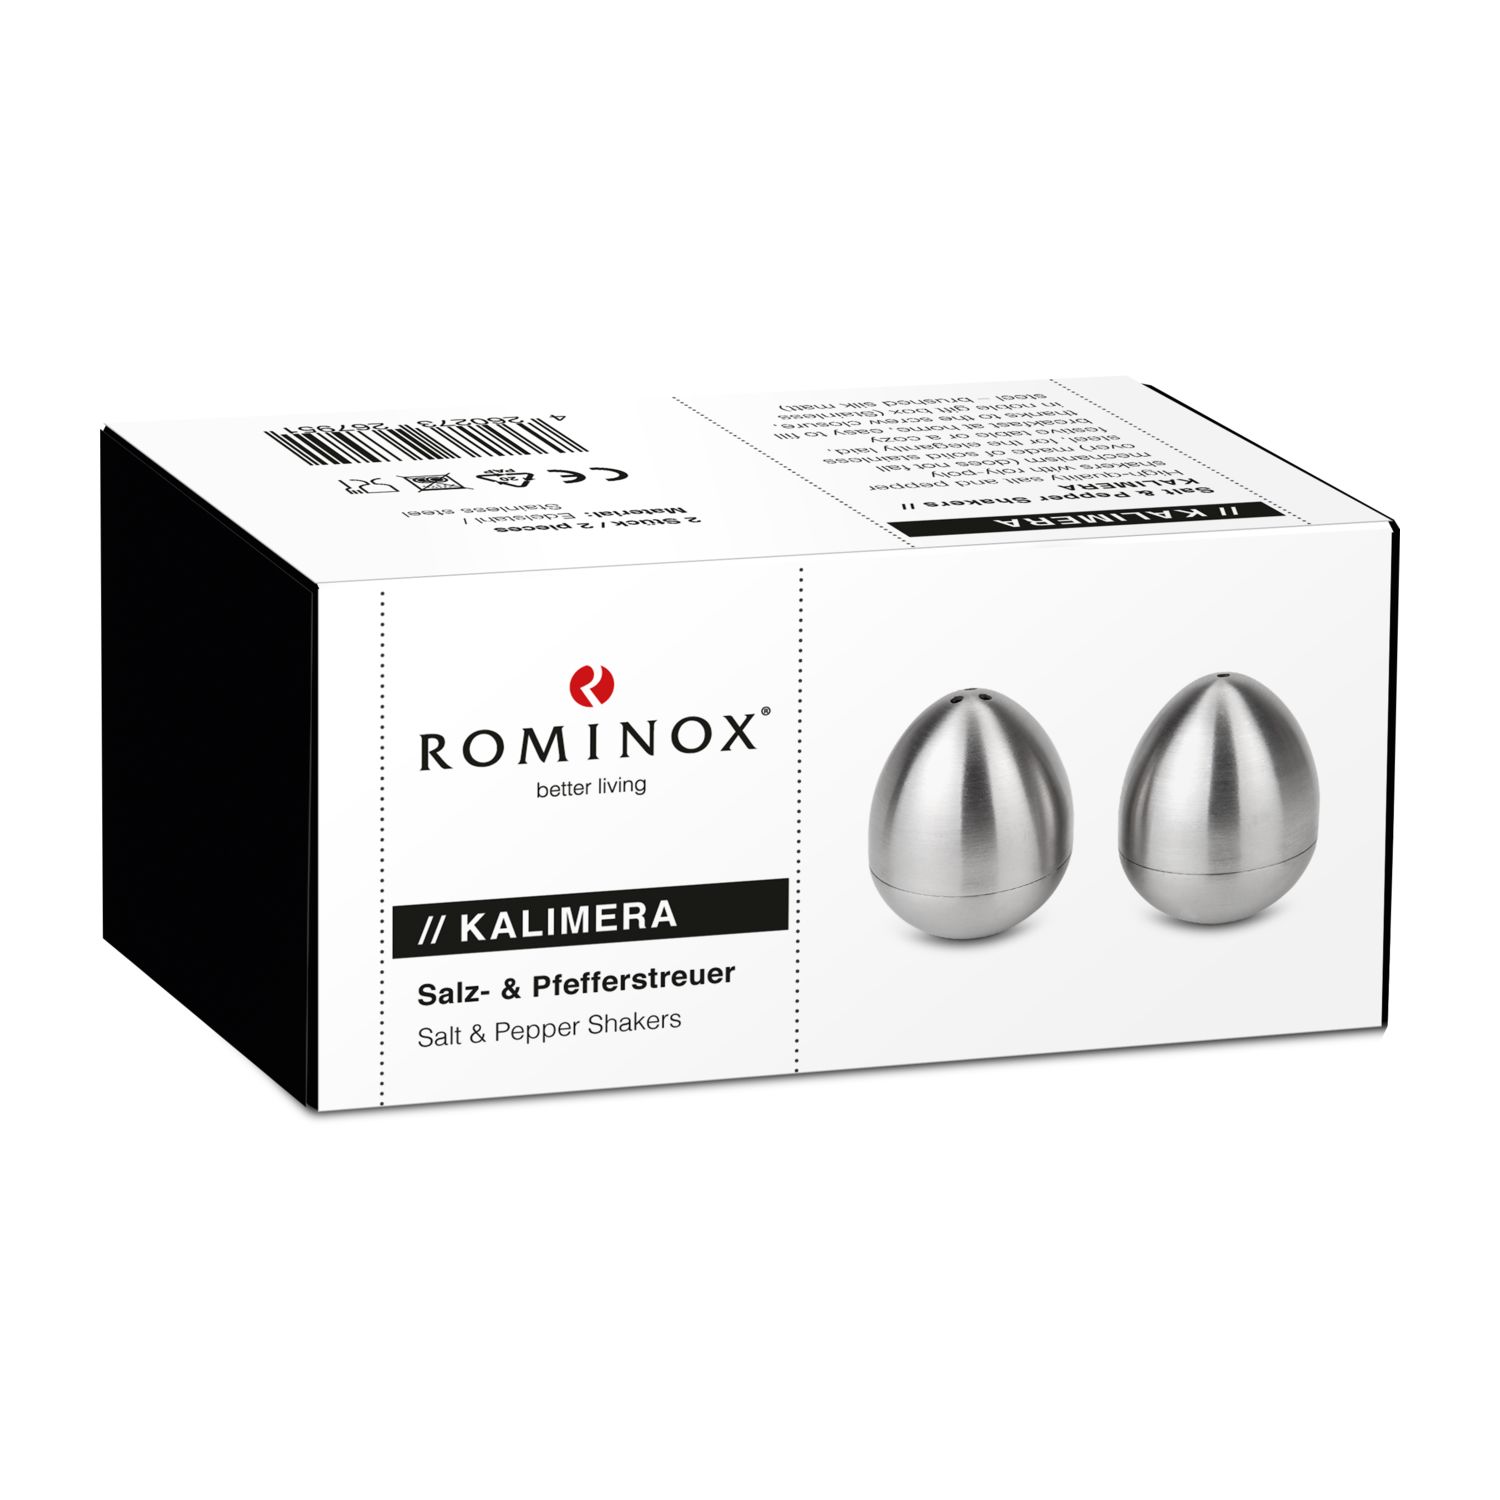 ROMINOX® Salz- & Pfefferstreuer // Kalimera